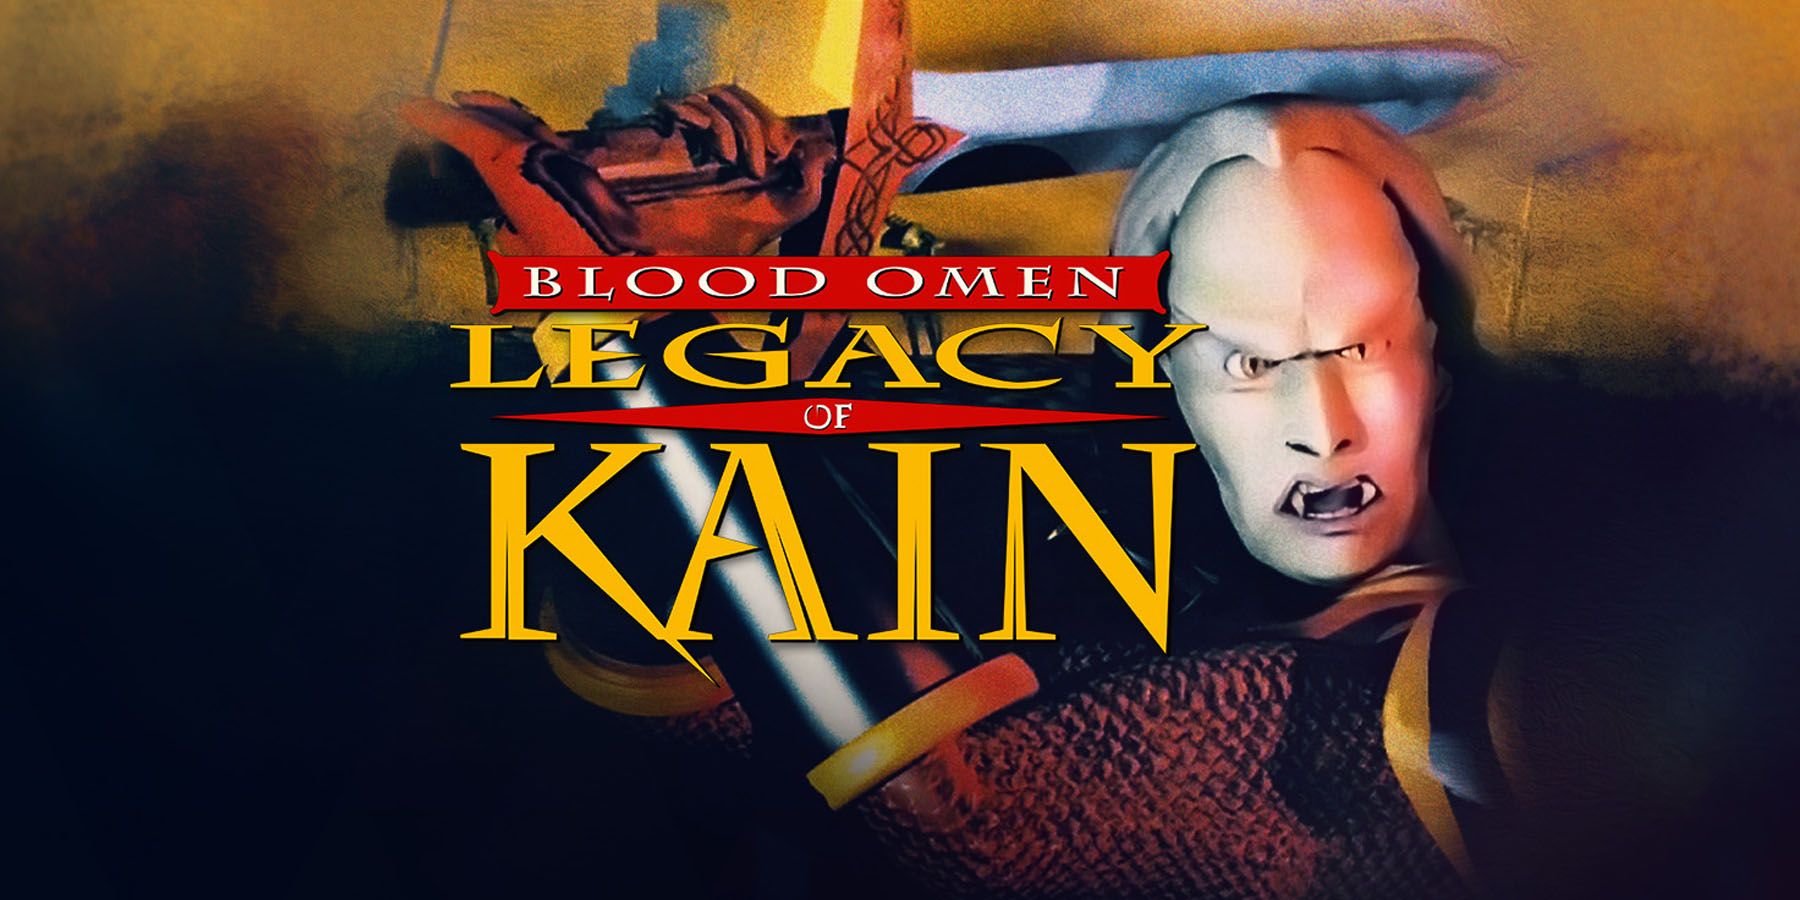 Blood Omen: Legacy of Kain obtiene un lanzamiento moderno para PC 25 años después